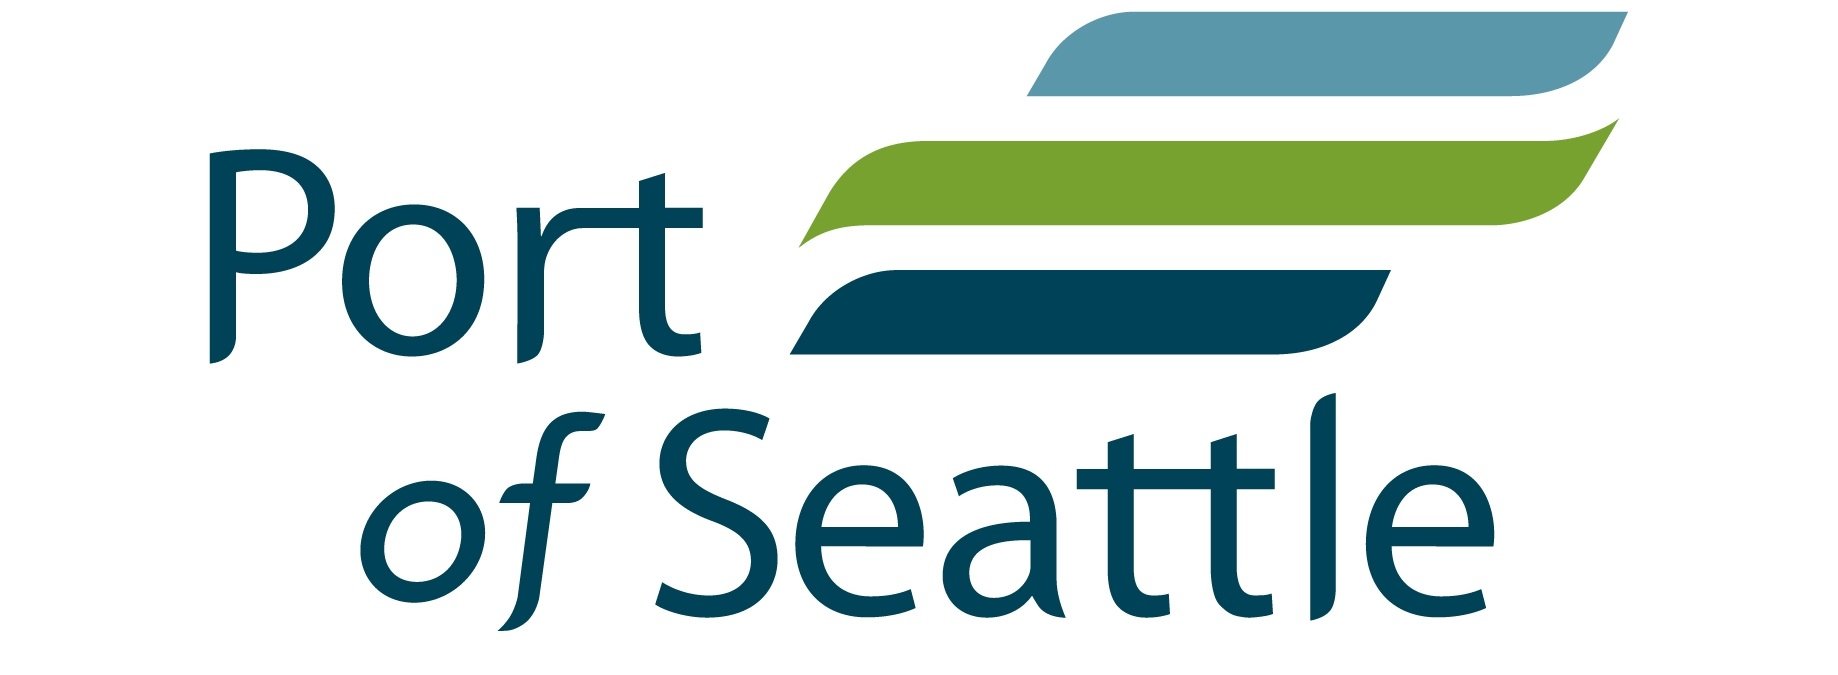 Port of Seattle Logo - Copy.JPG